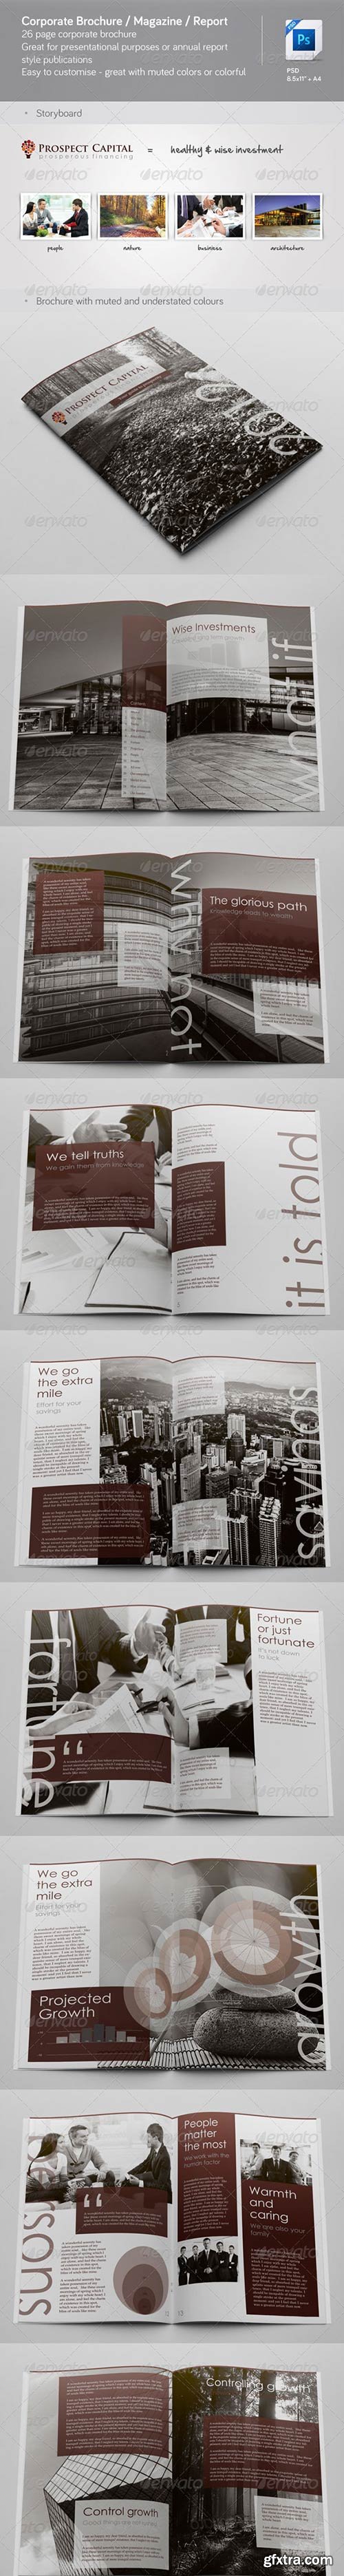 GraphicRiver - Corporate Brochure / Magazine / Annual Report